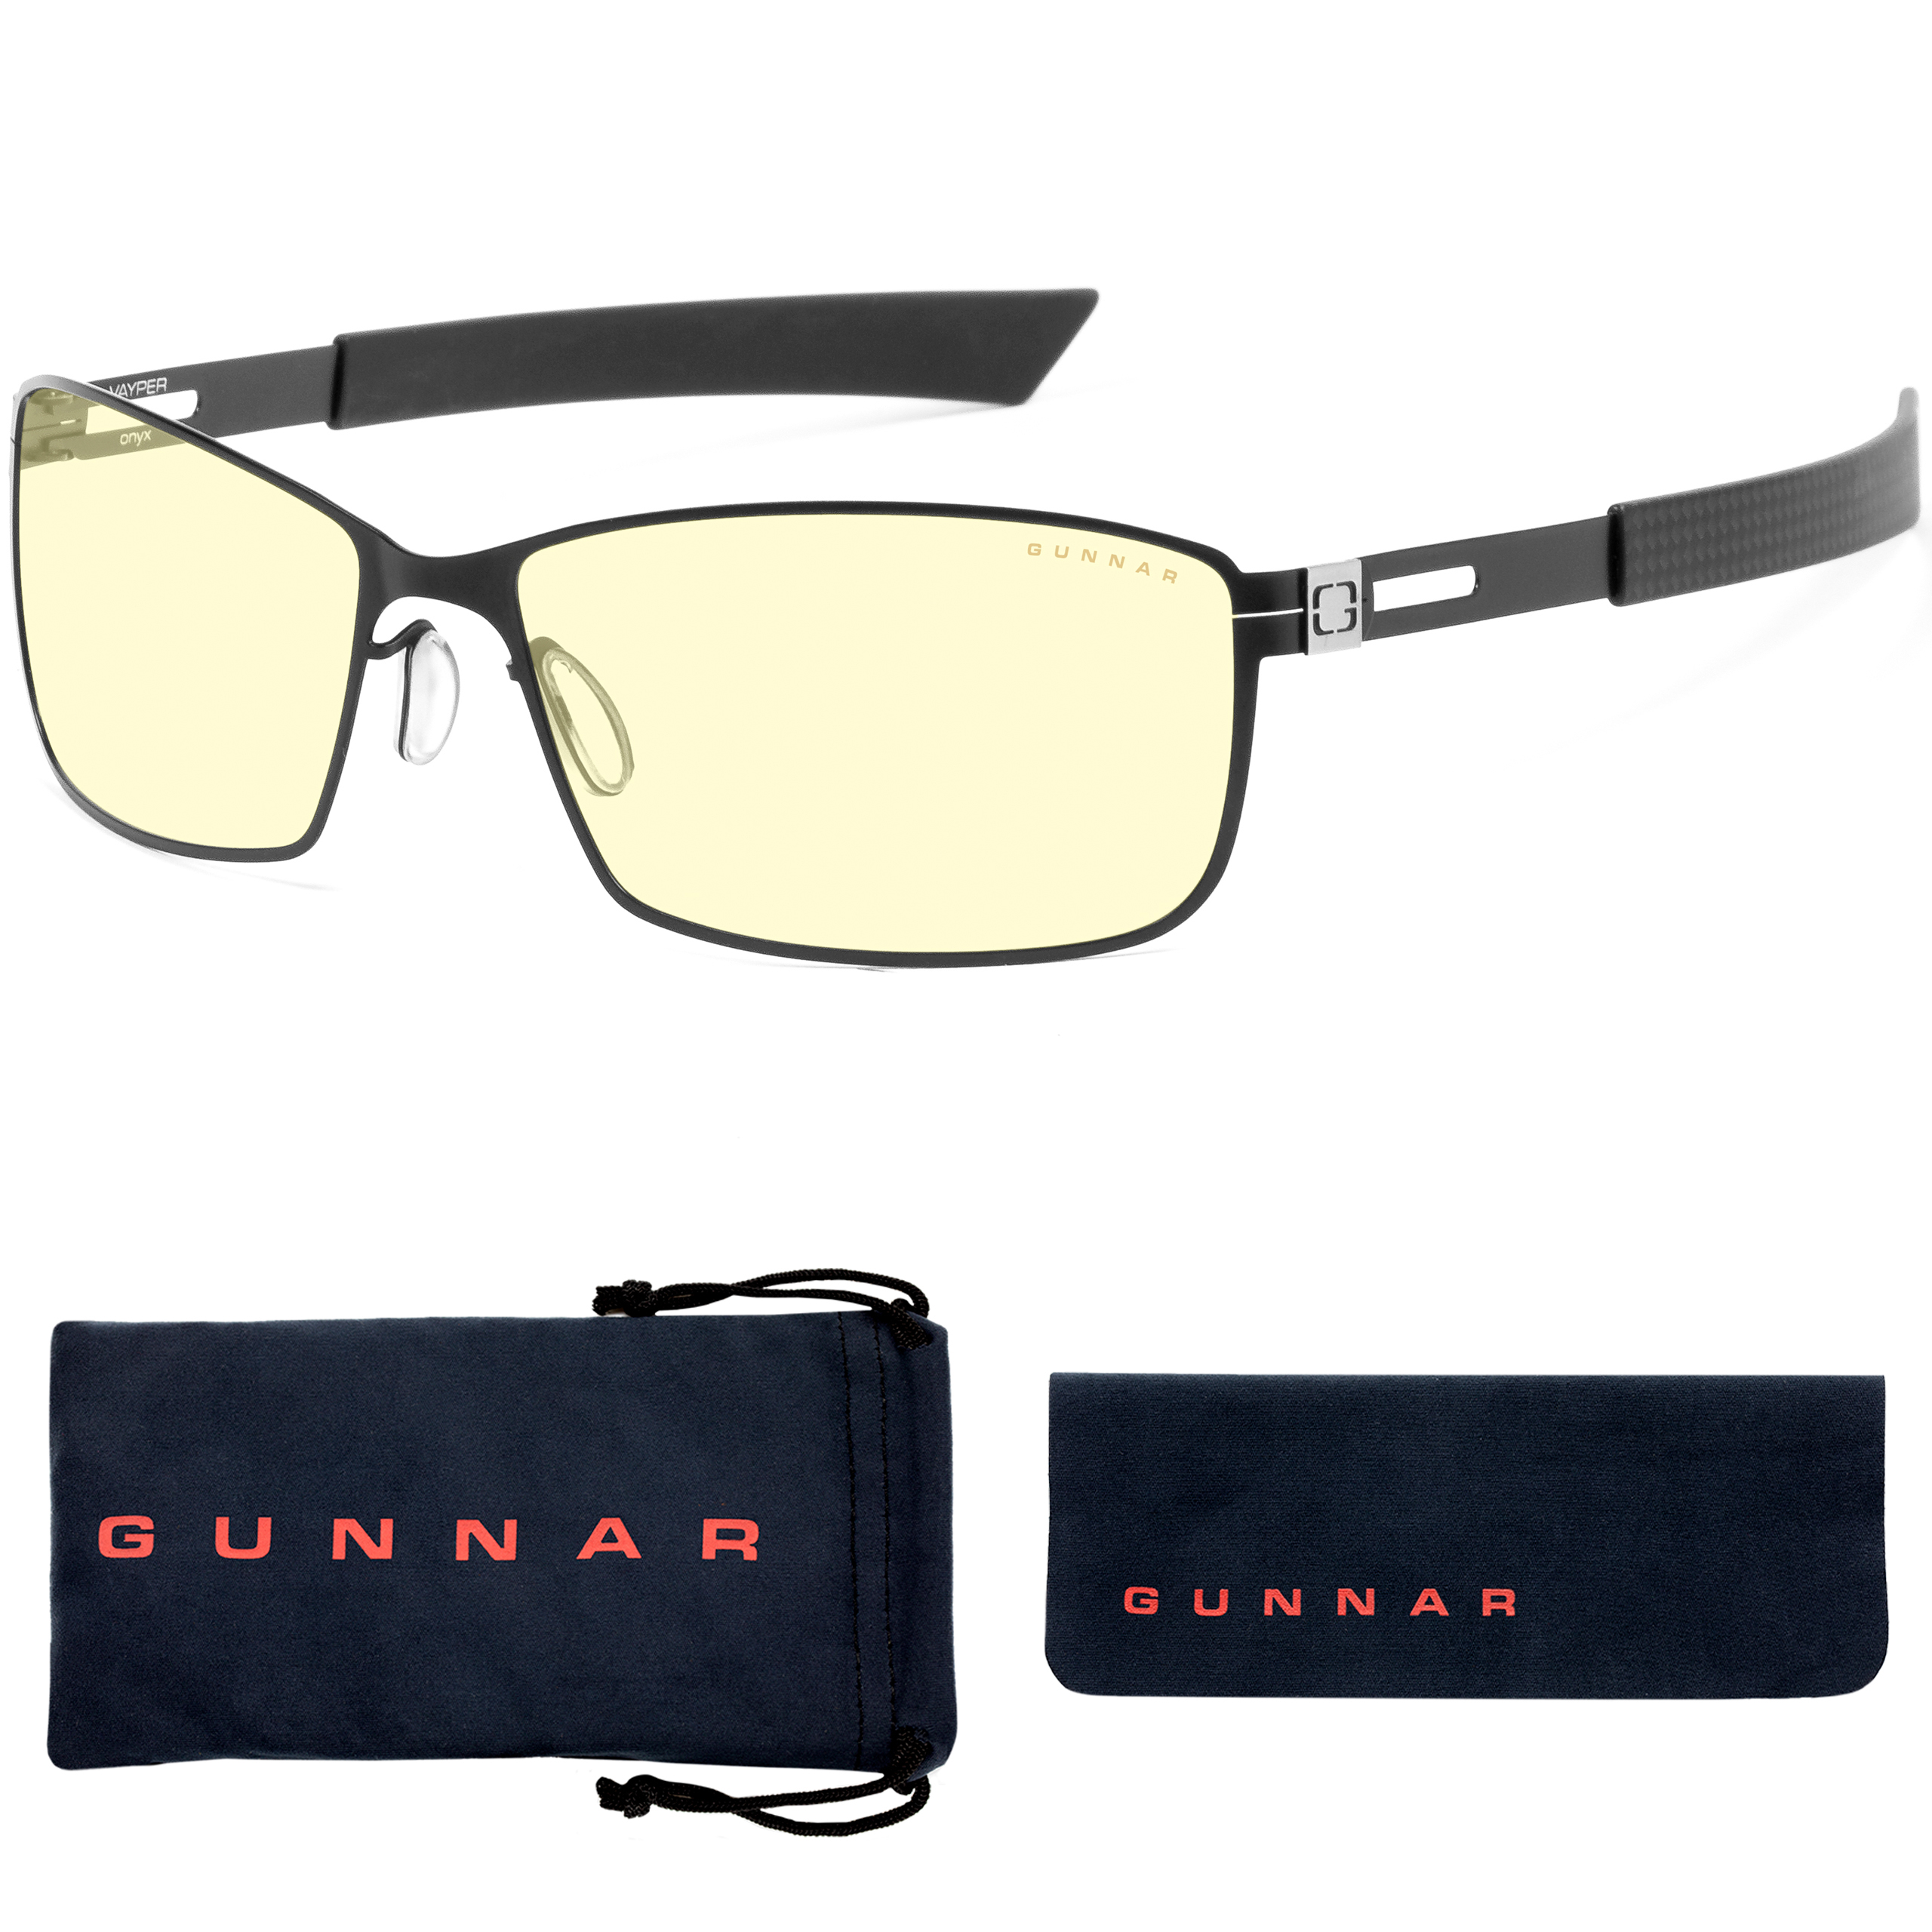 Tönung, GUNNAR Vayper, Rahmen, Gaming Brille Onyx UV-Schutz, Premium, Amber Blaulichtfilter,